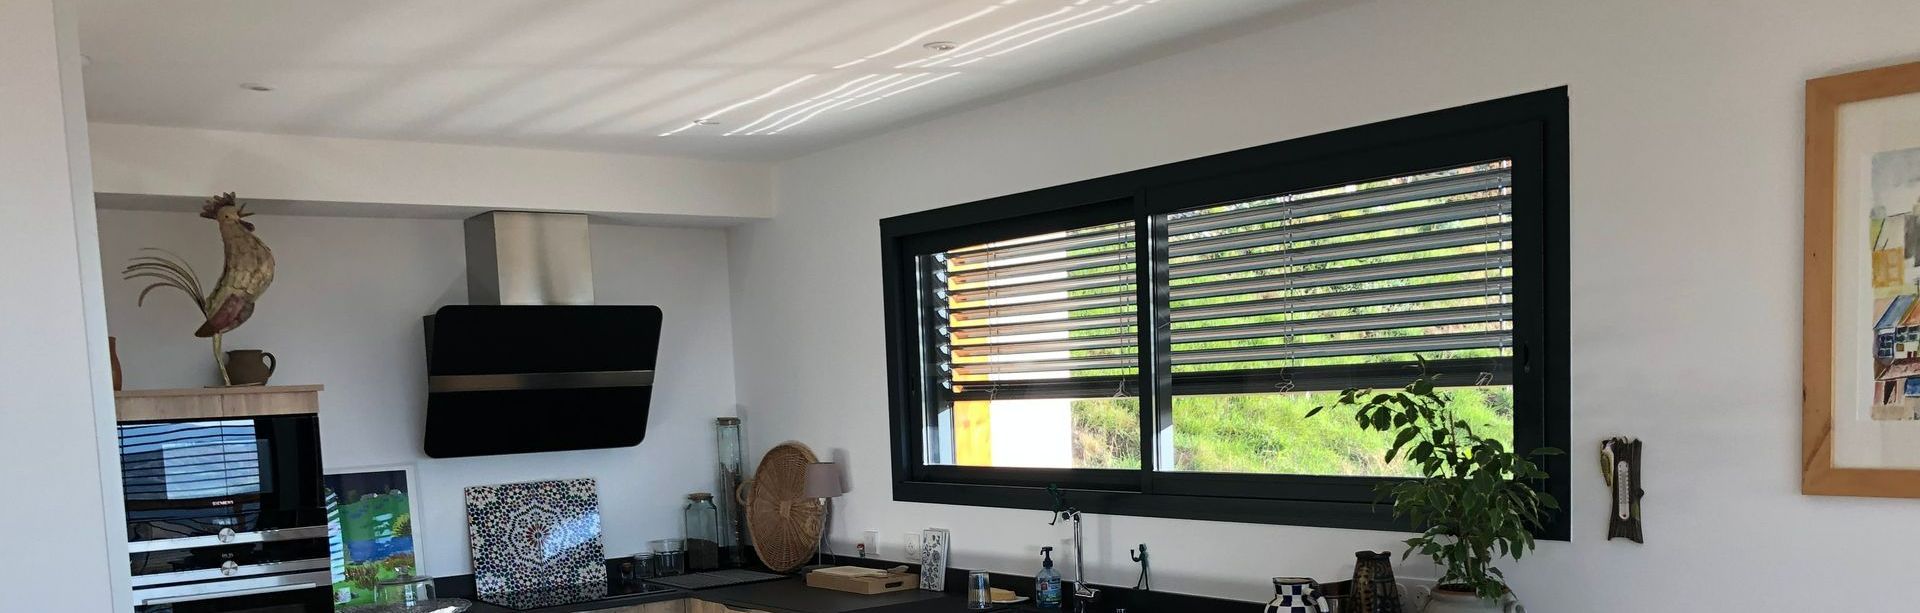 Installation de fenêtre en aluminium dans une cuisine